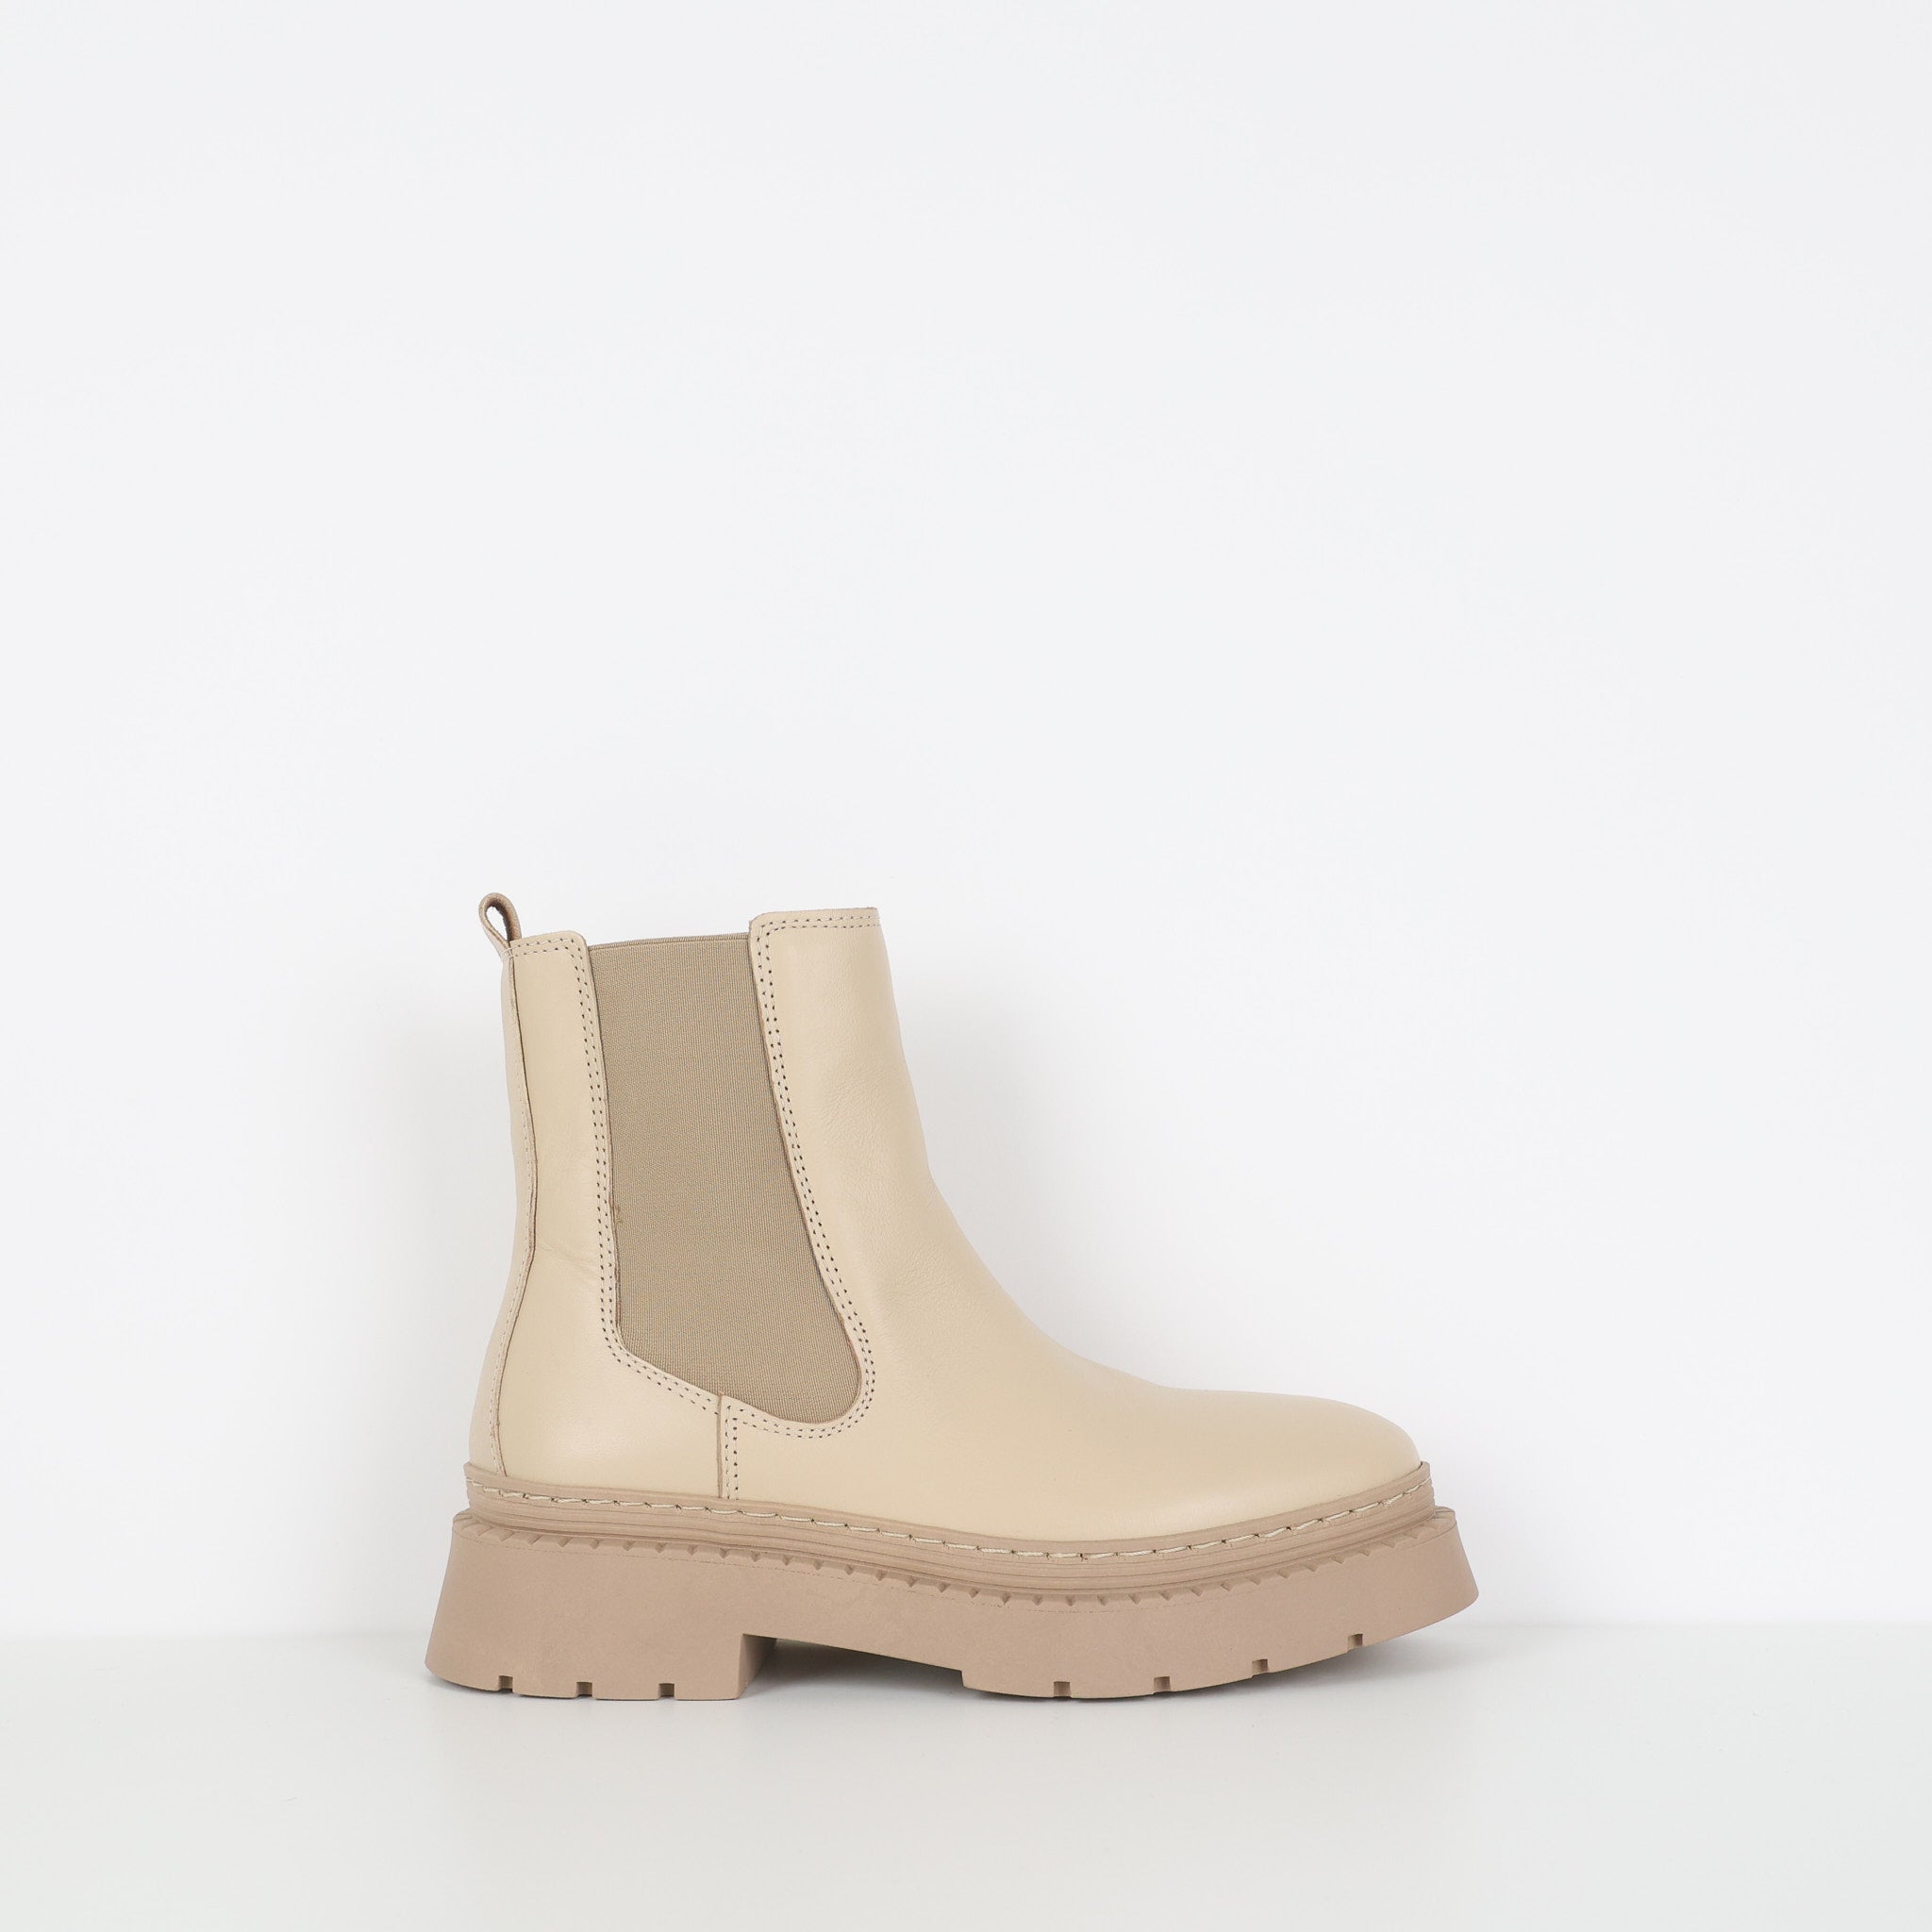 Boots, Shoe Size 37